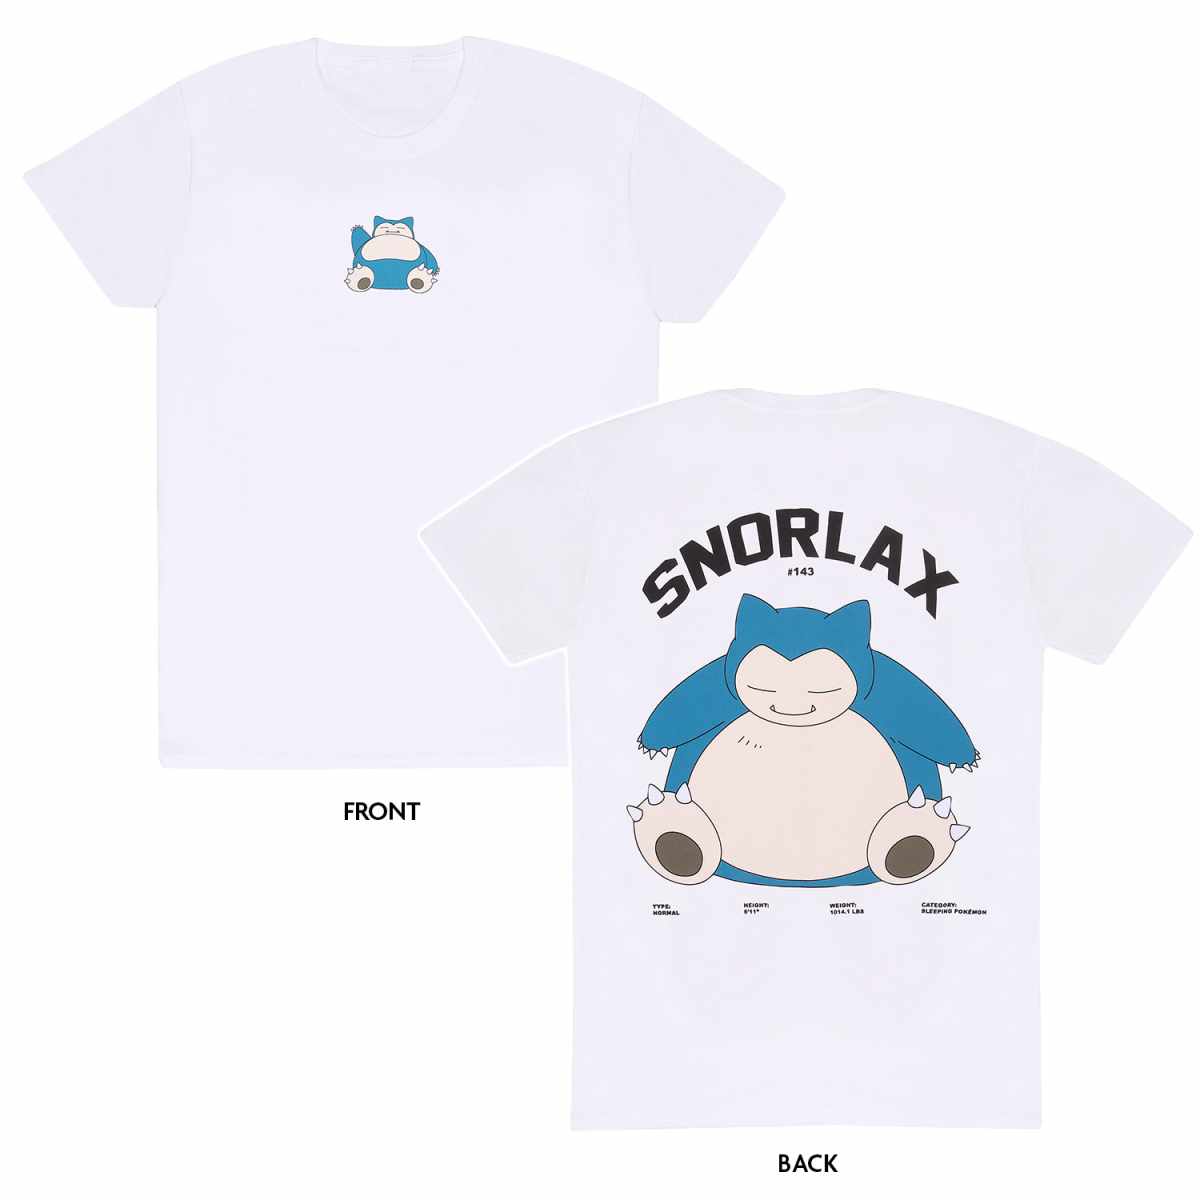 Pokemon Snorlax T-Shirt